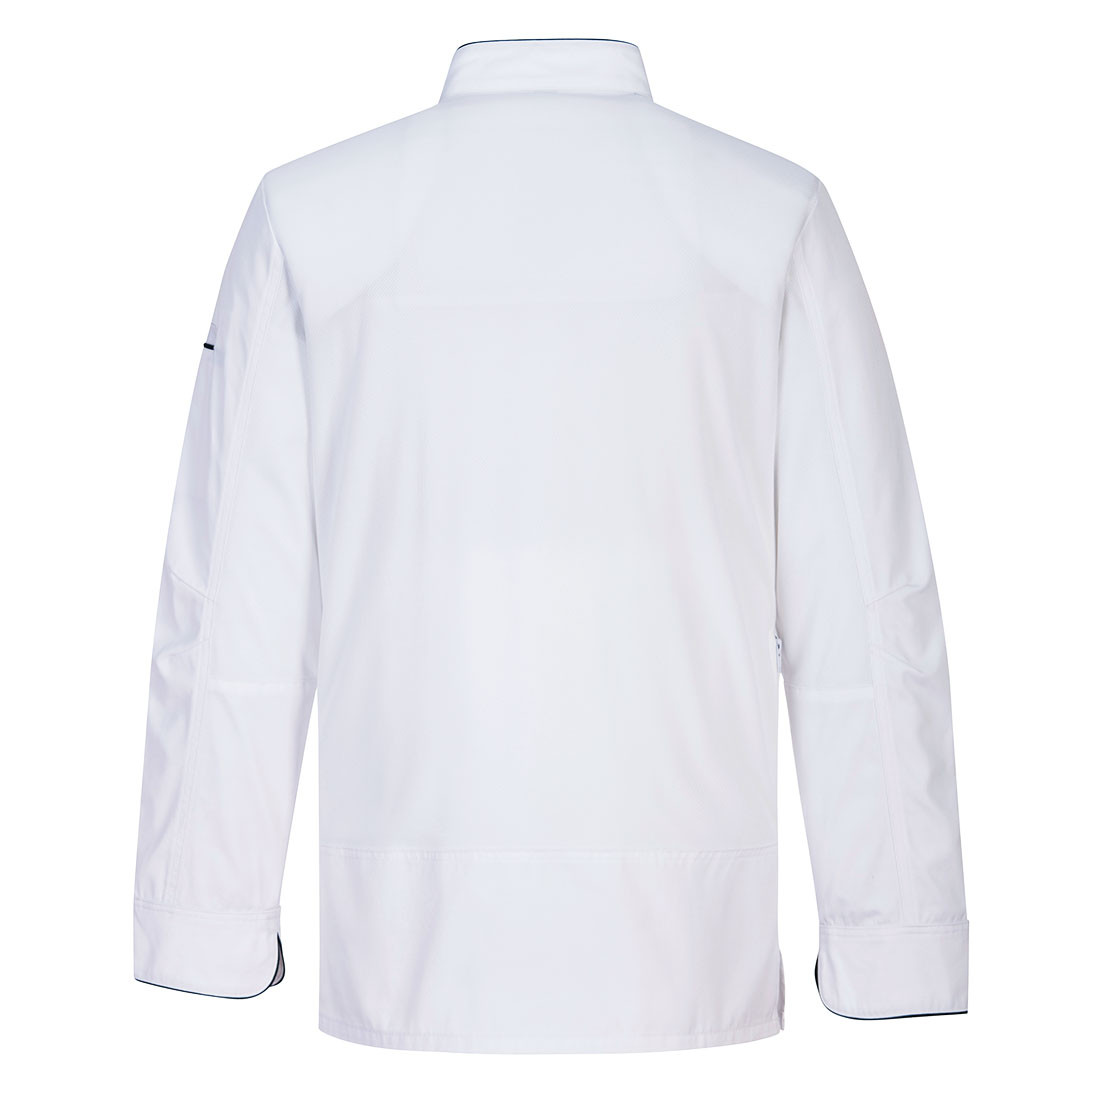 Surrey Chefs Jacket L/S - Safetywear